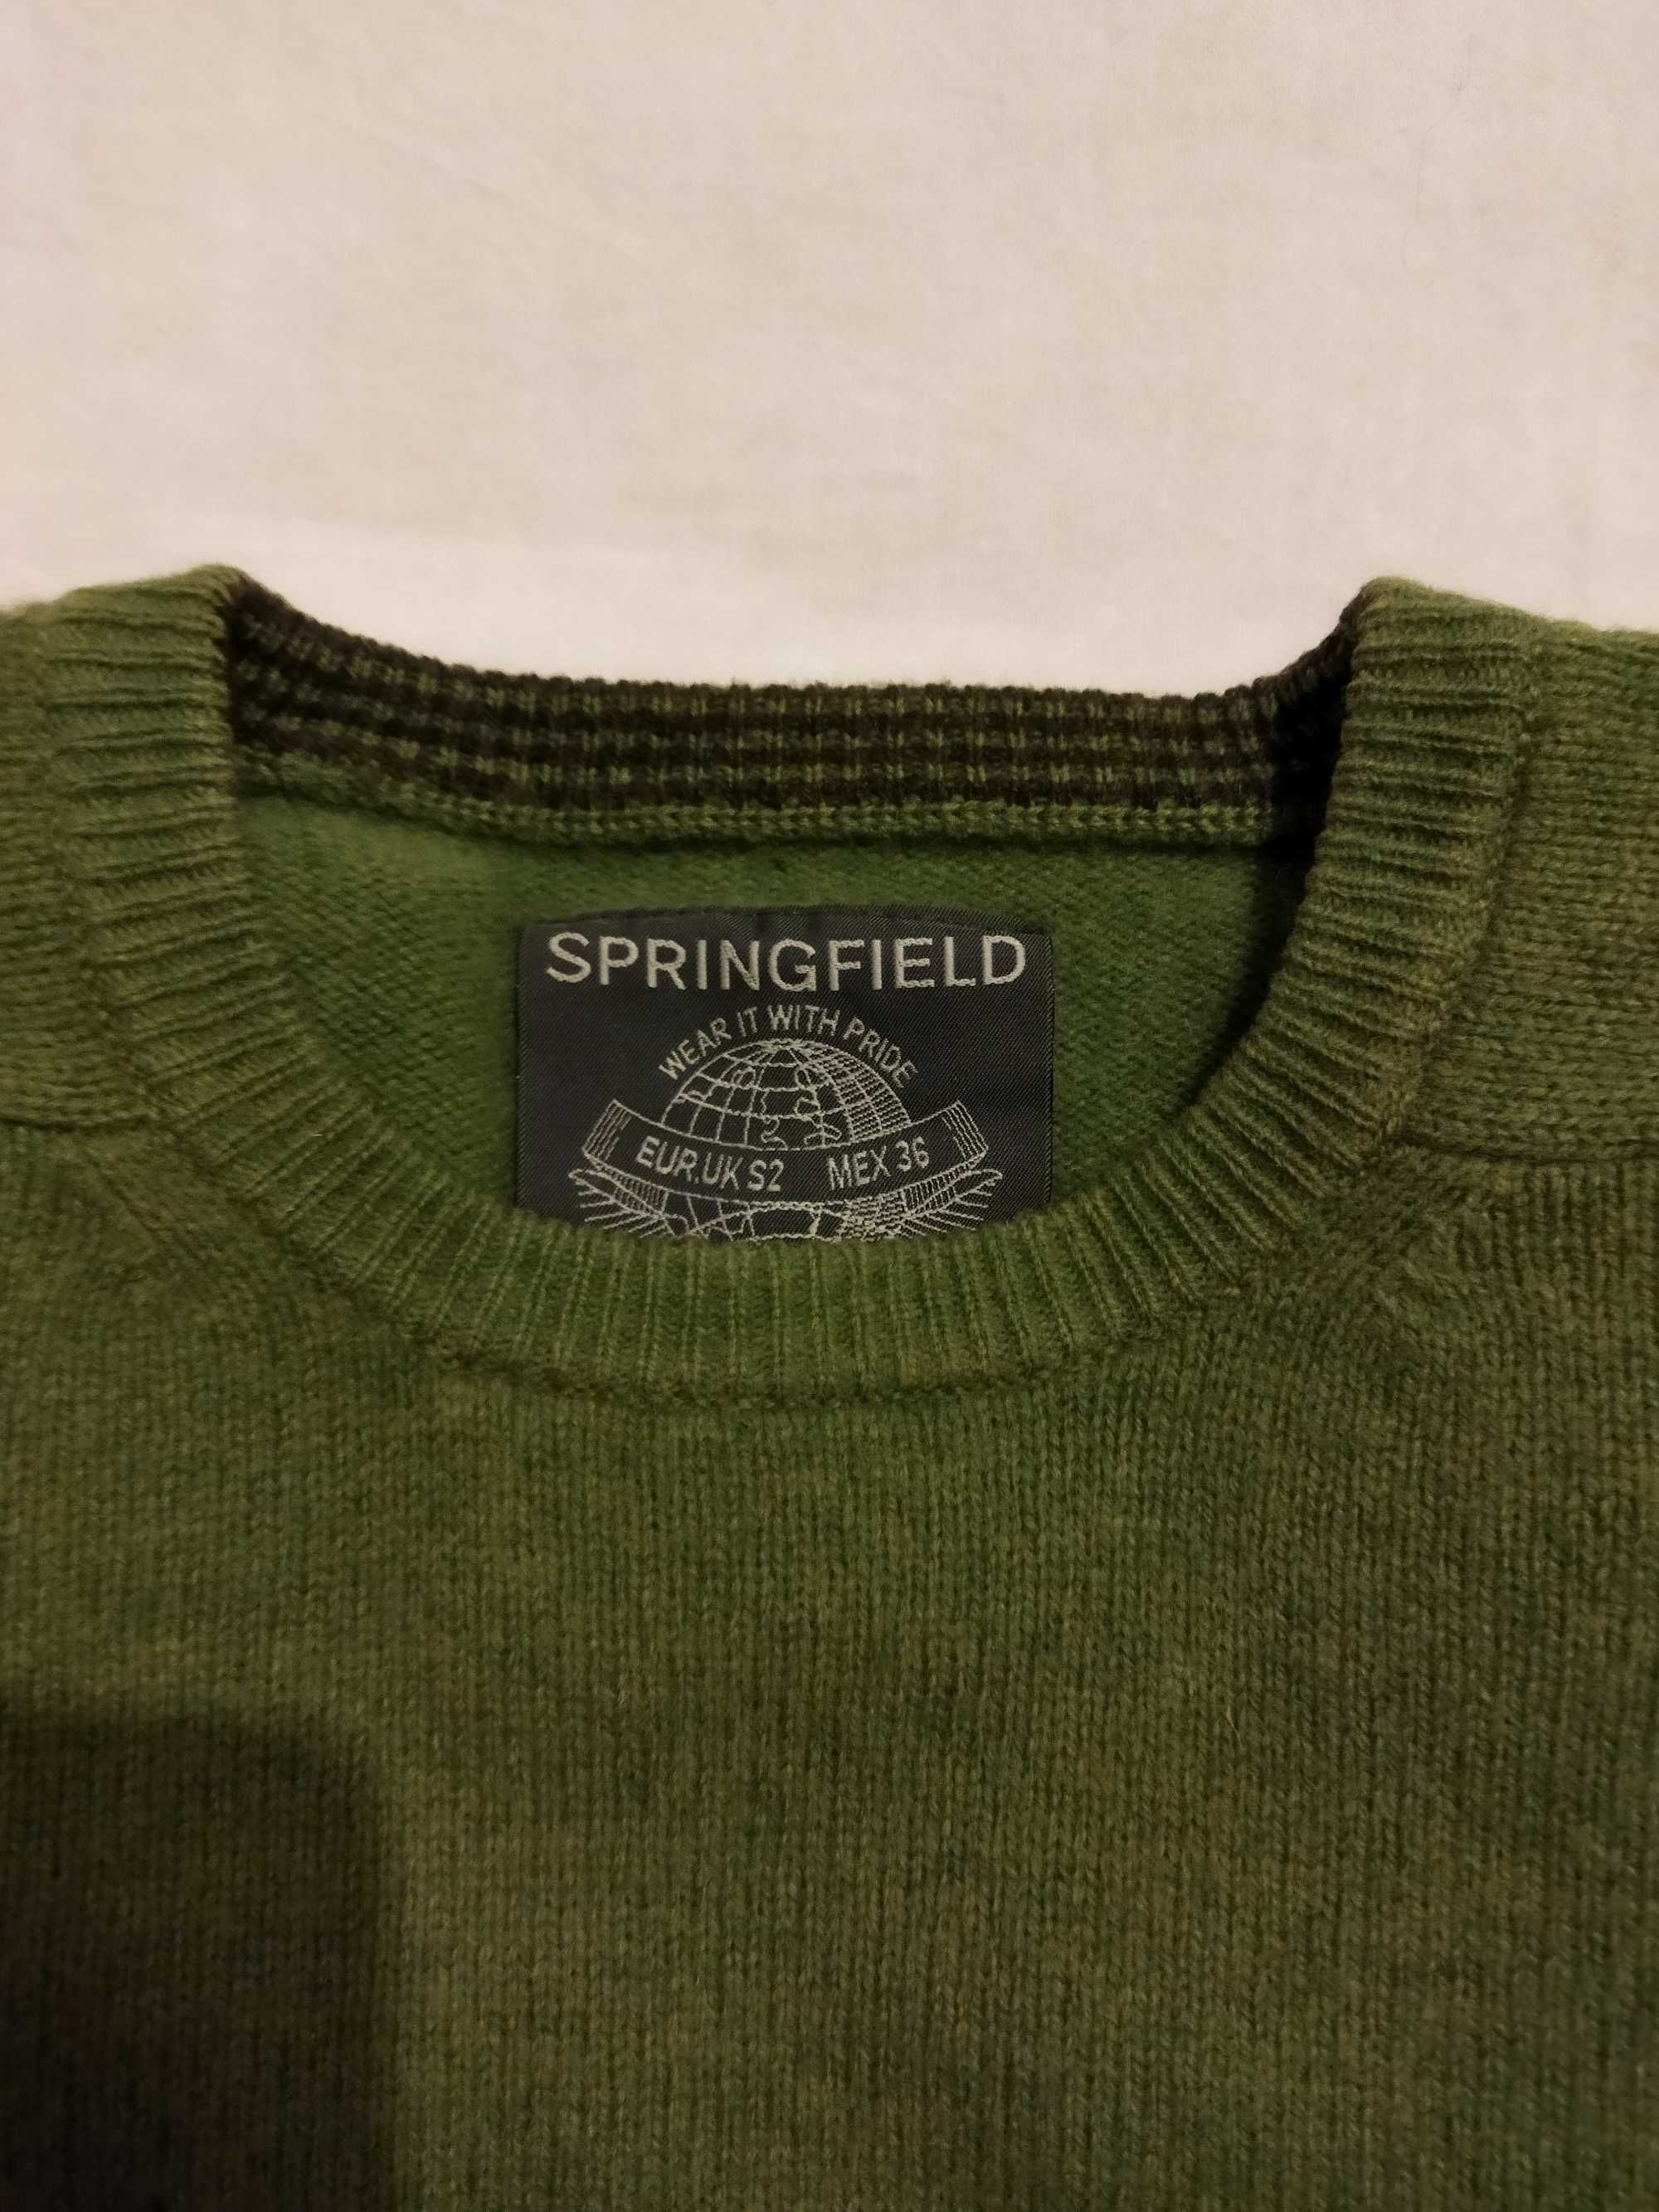 Camisola de lã Springfield verde [tamanho S]